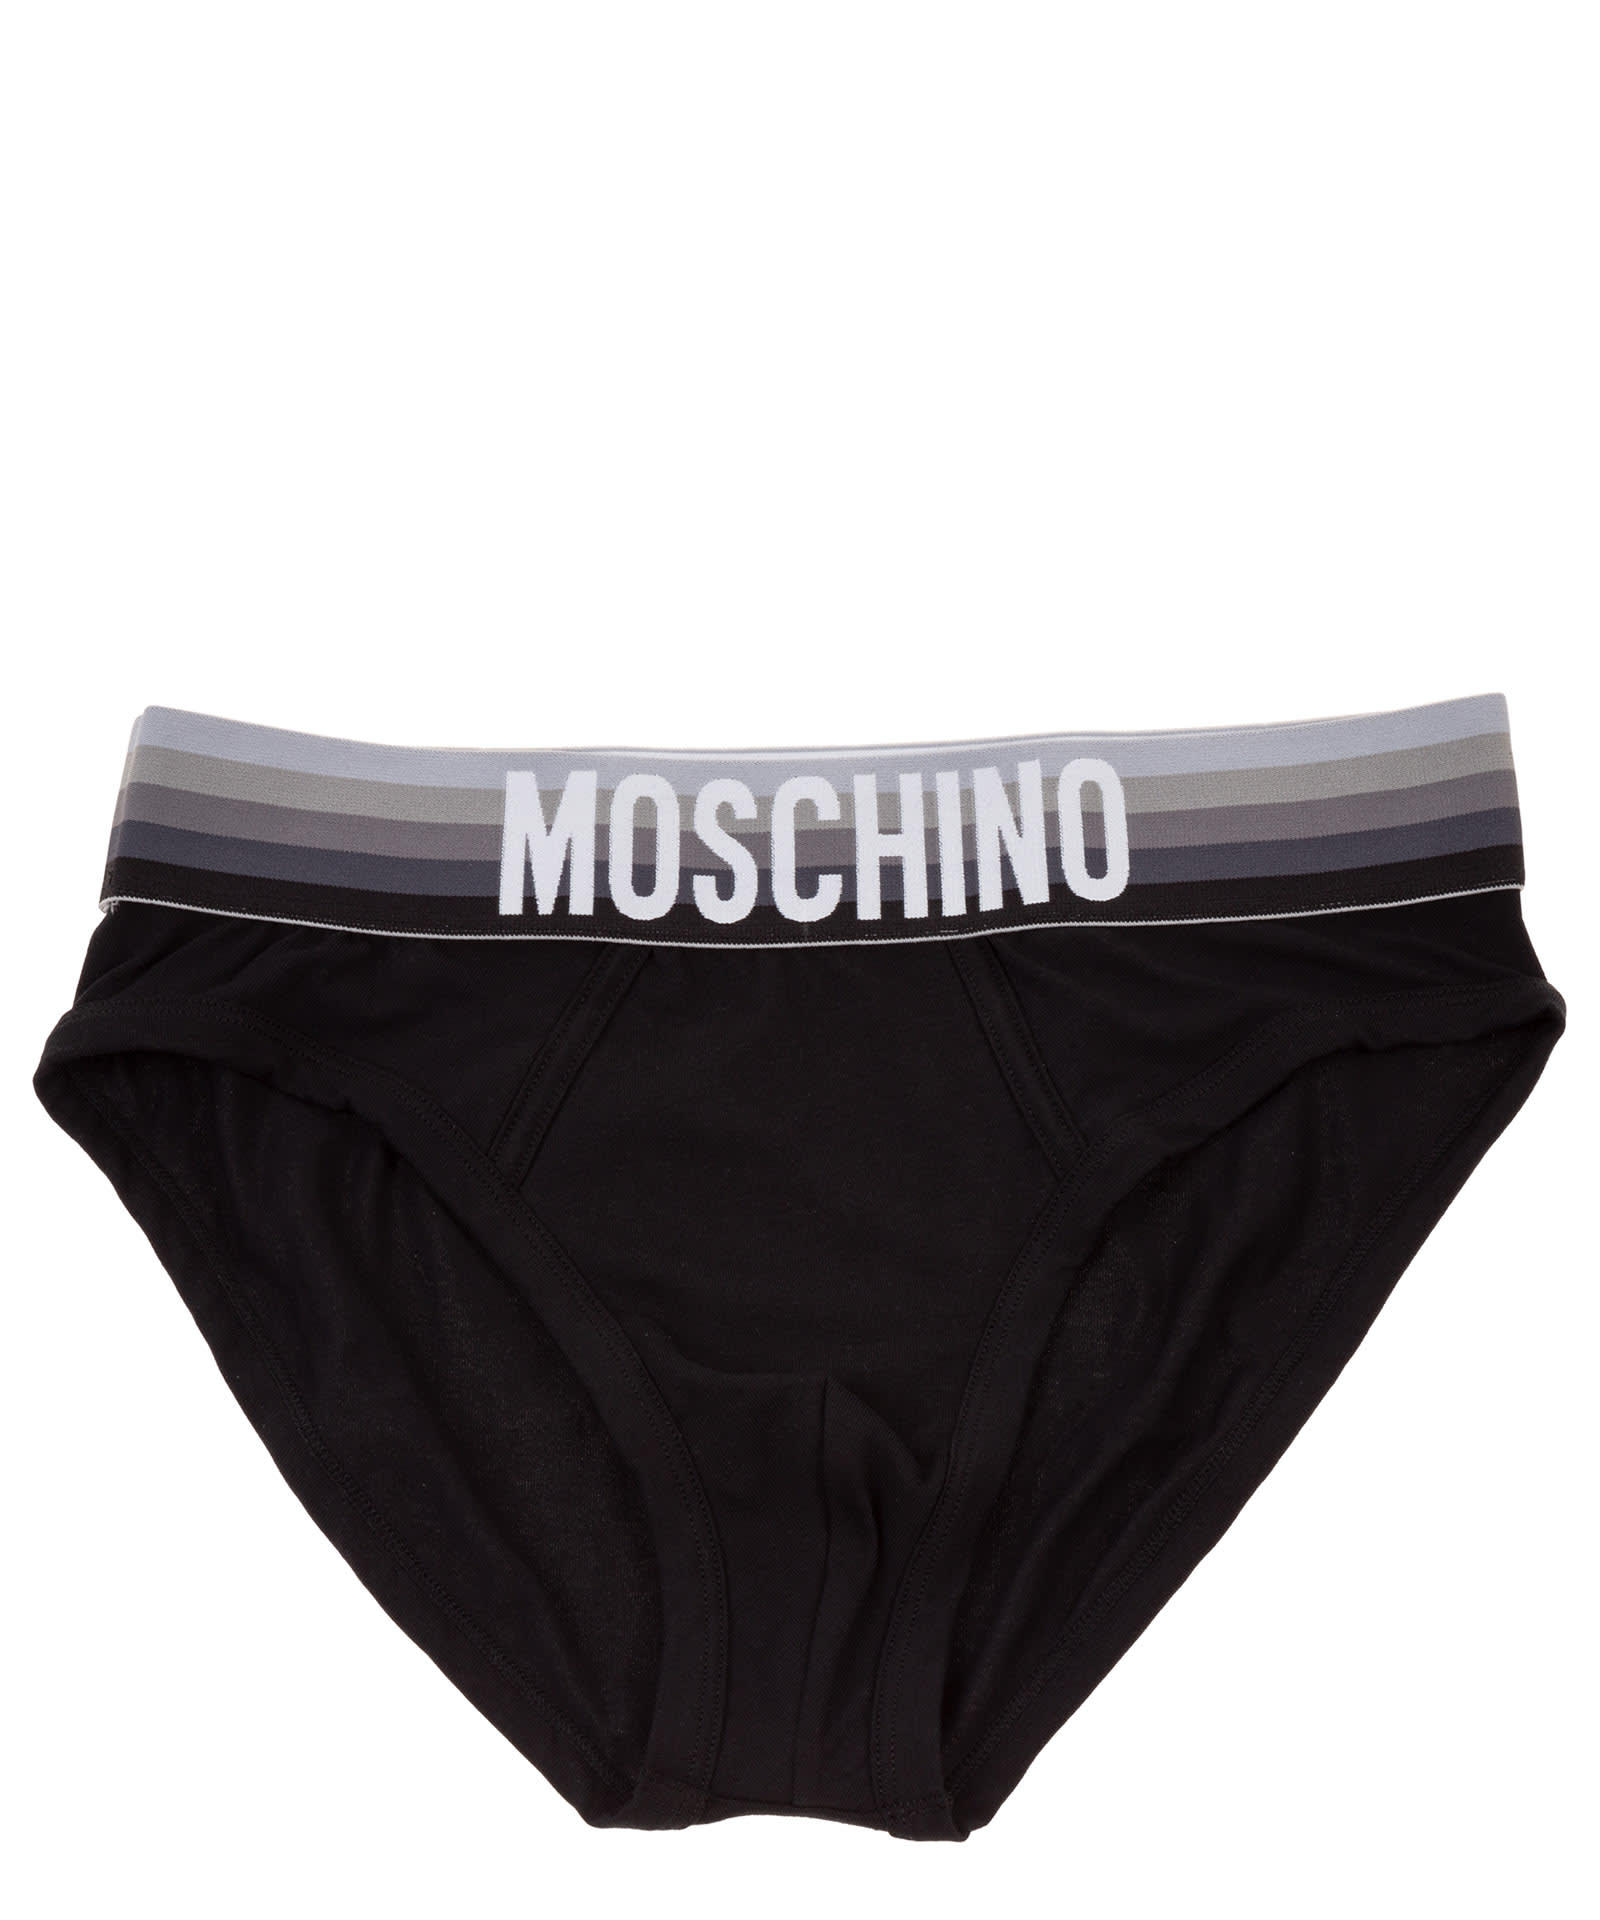 Moschino Underwear Cotton Briefs